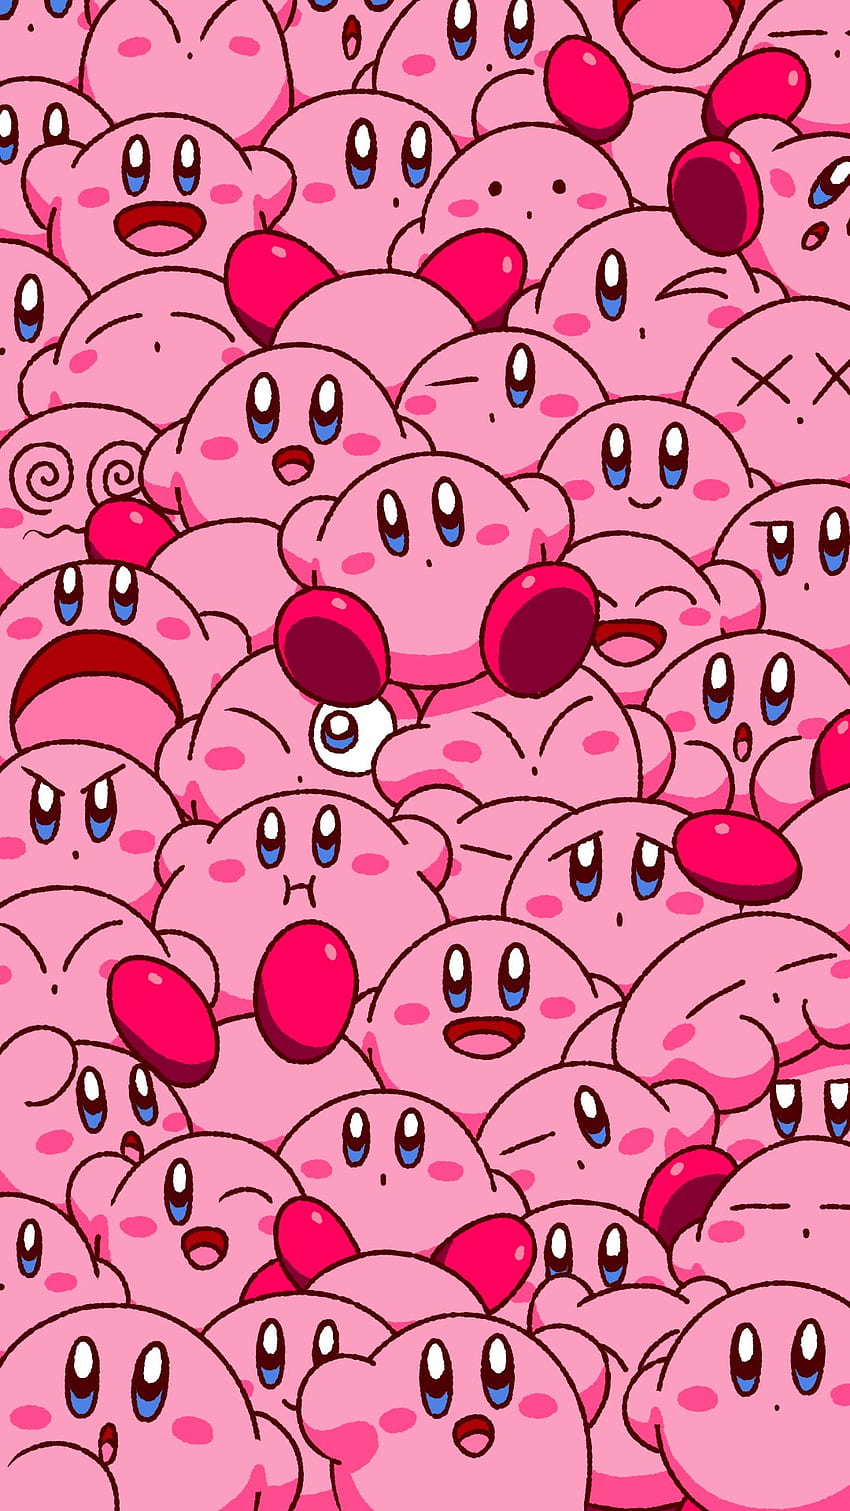 Hãy xem hình nền Kirby với nền tím dịu dàng và đáng yêu này, được thiết kế để làm mới không gian máy tính của bạn. Sắp đặt nó ngay và cùng Kirby vui chơi nhé!